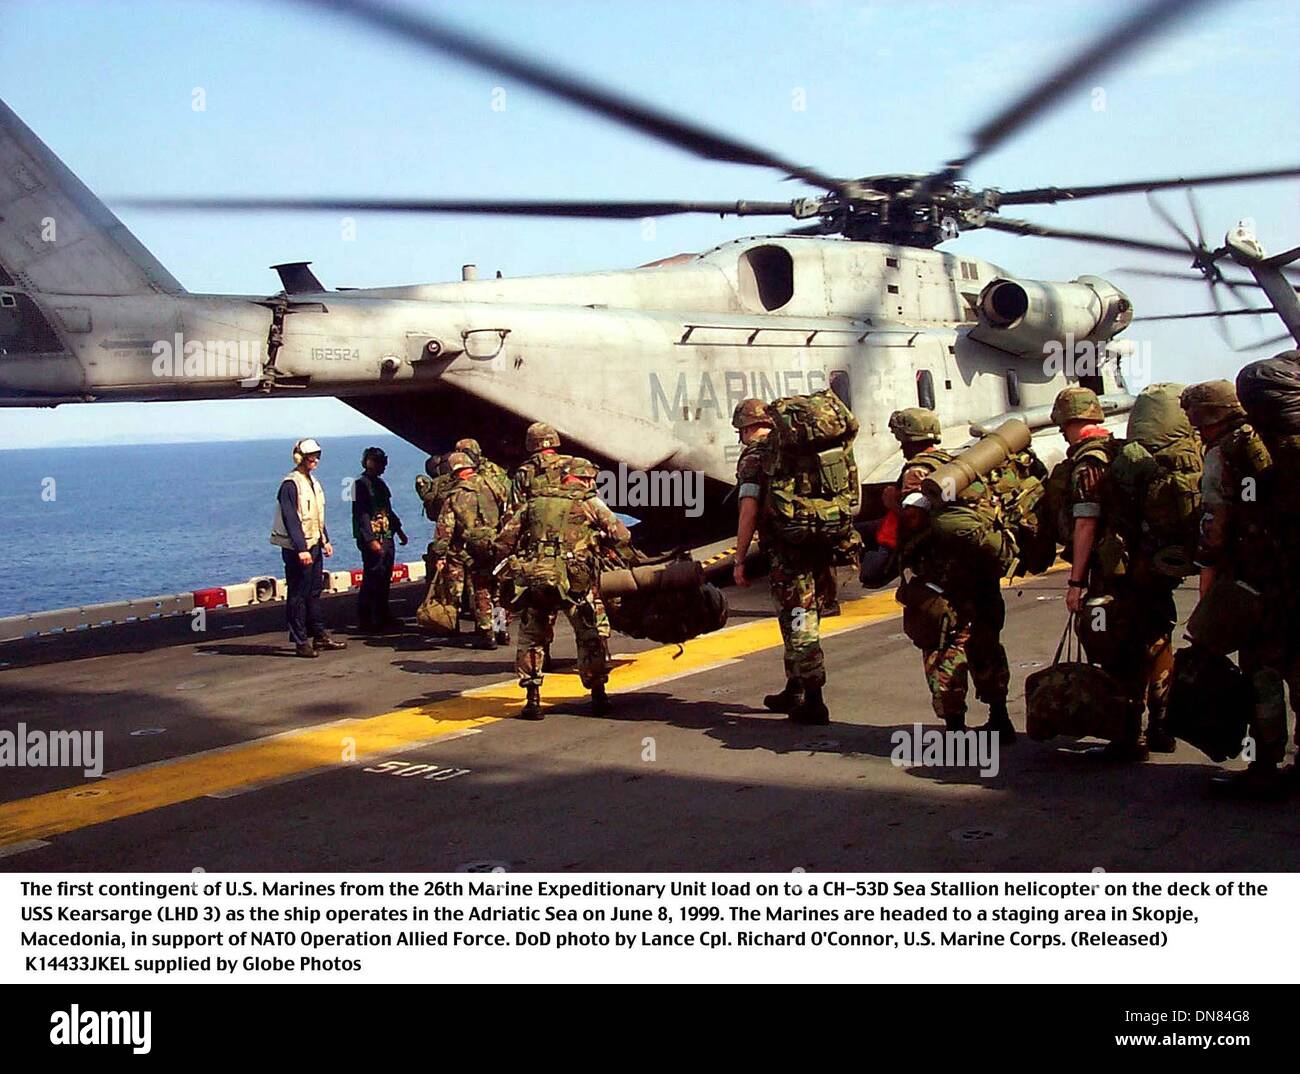 Junio 1, 1999 - el buque USS Kearsarge (LHD 3 - 990608-M-8230S-003 ..El primer contingente de Infantes de Marina de la 26ta Unidad Expedicionaria de la Infantería de Marina la carga en un semental de tipo CH-53D Mar helicóptero sobre la cubierta del USS Kearsarge (LHD 3) el 8 de junio de 1999. Los infantes de marina están dirigidos a un área de ensayo en Skopje, Macedonia, en apoyo de la Operación Fuerza Aliada de la OTAN. DoD Lance Cpl. Richard O'Connor, U.S. Foto de stock